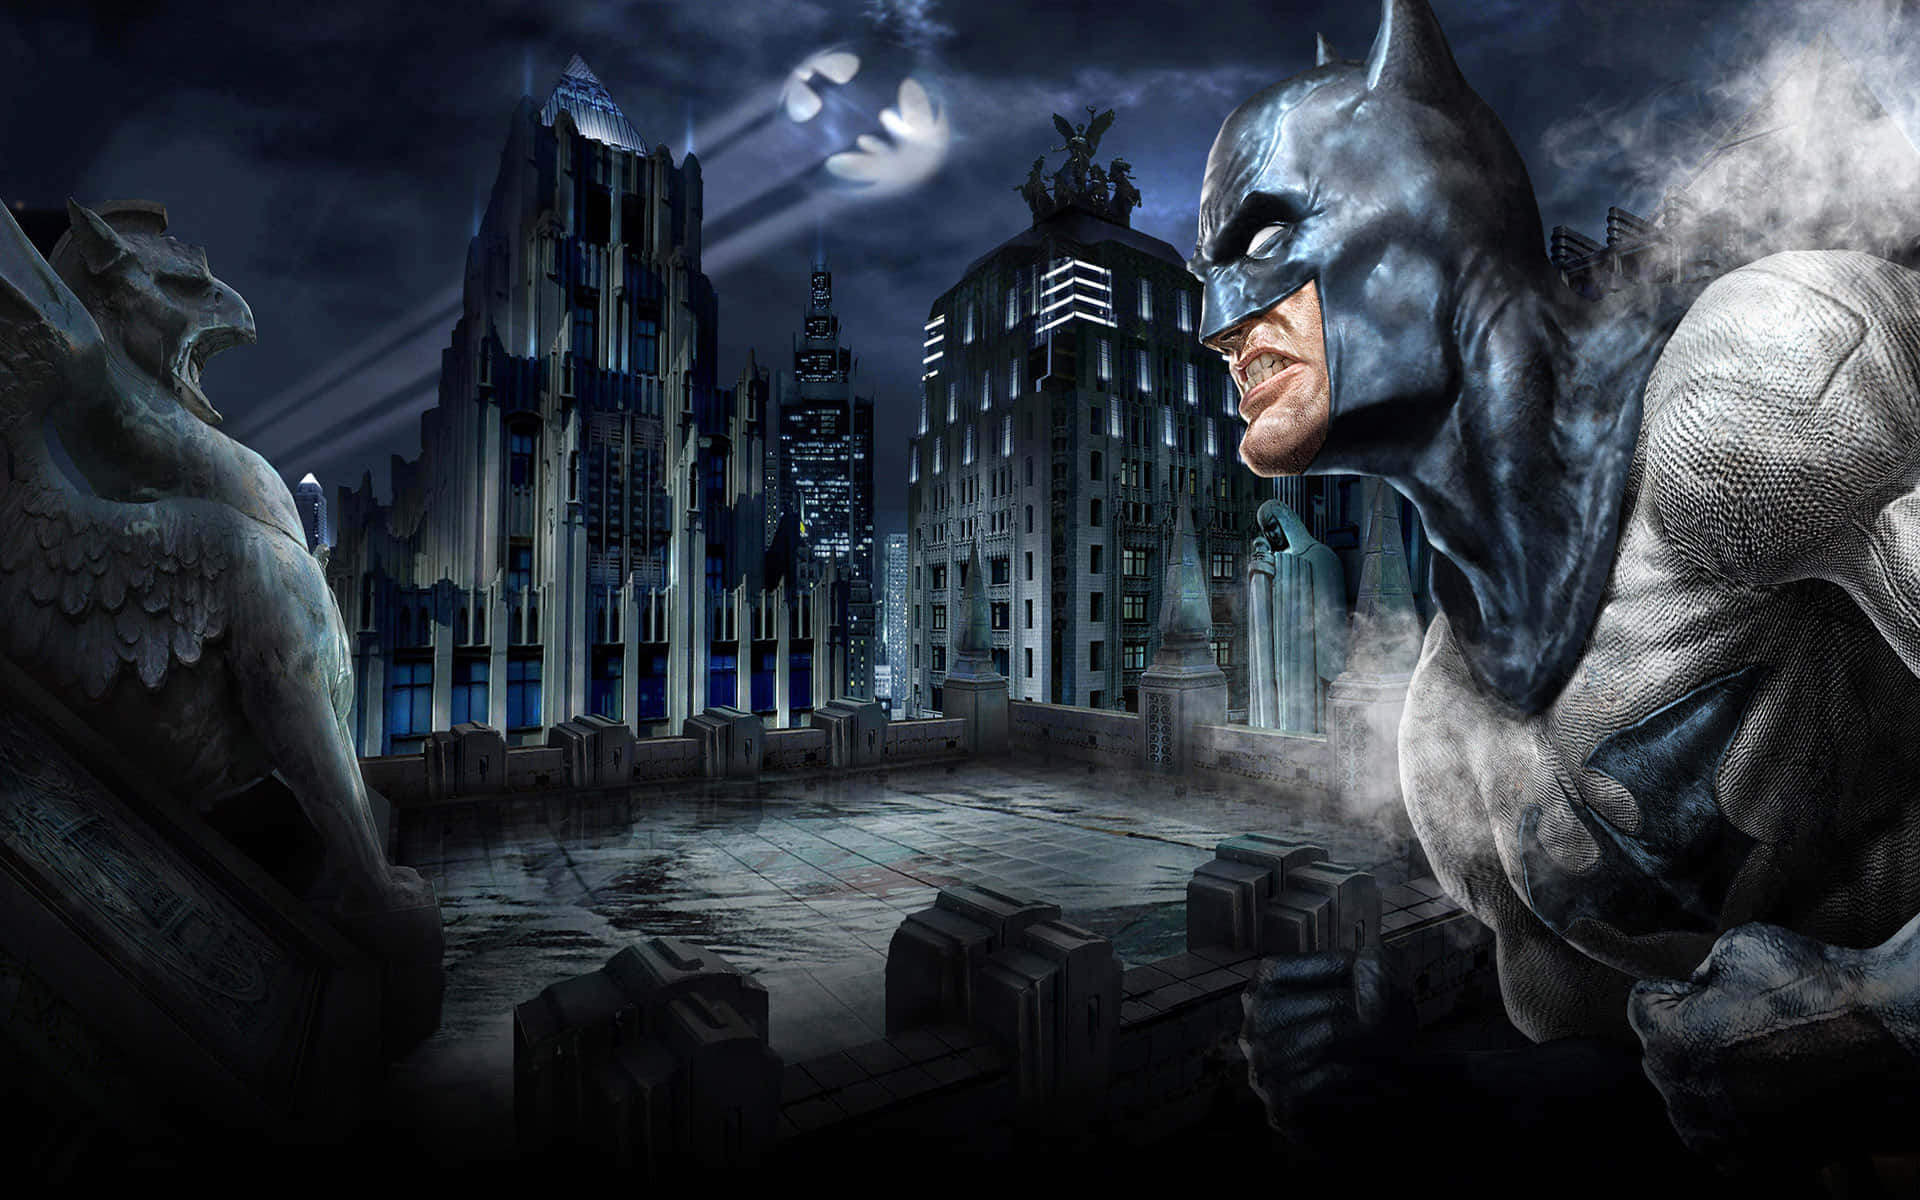 The Iconic Bat Signal Illuminating The Night Sky Background